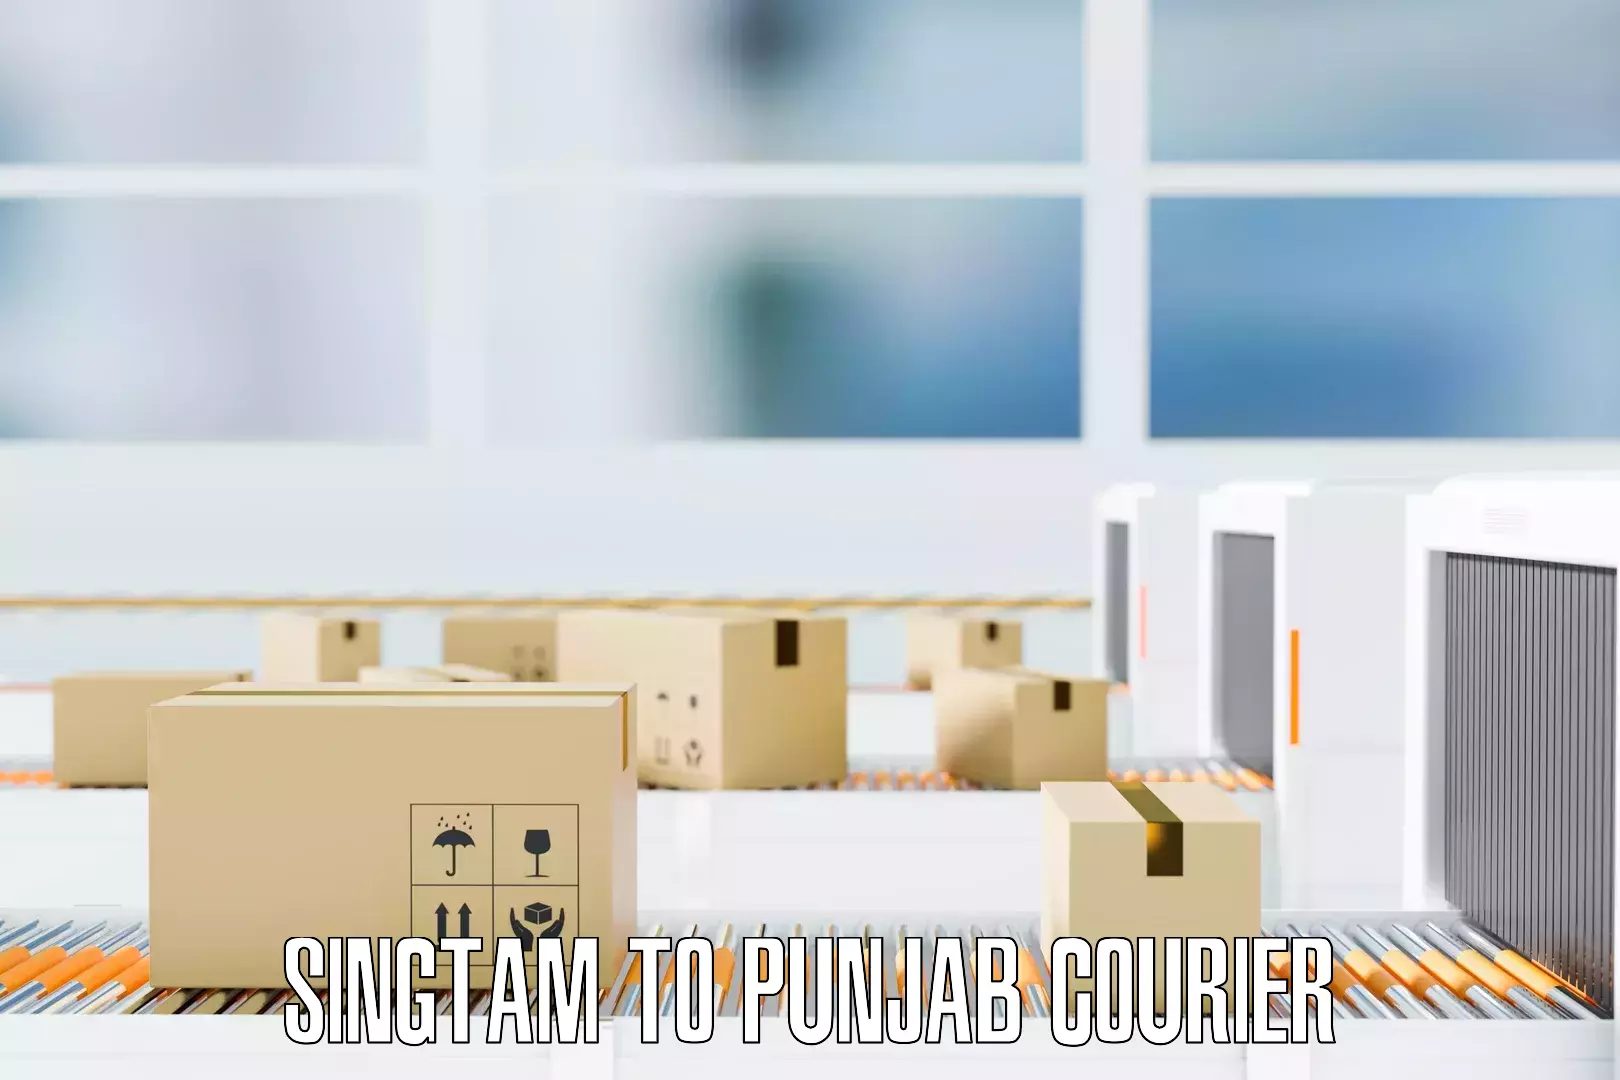 Furniture moving experts Singtam to Punjab